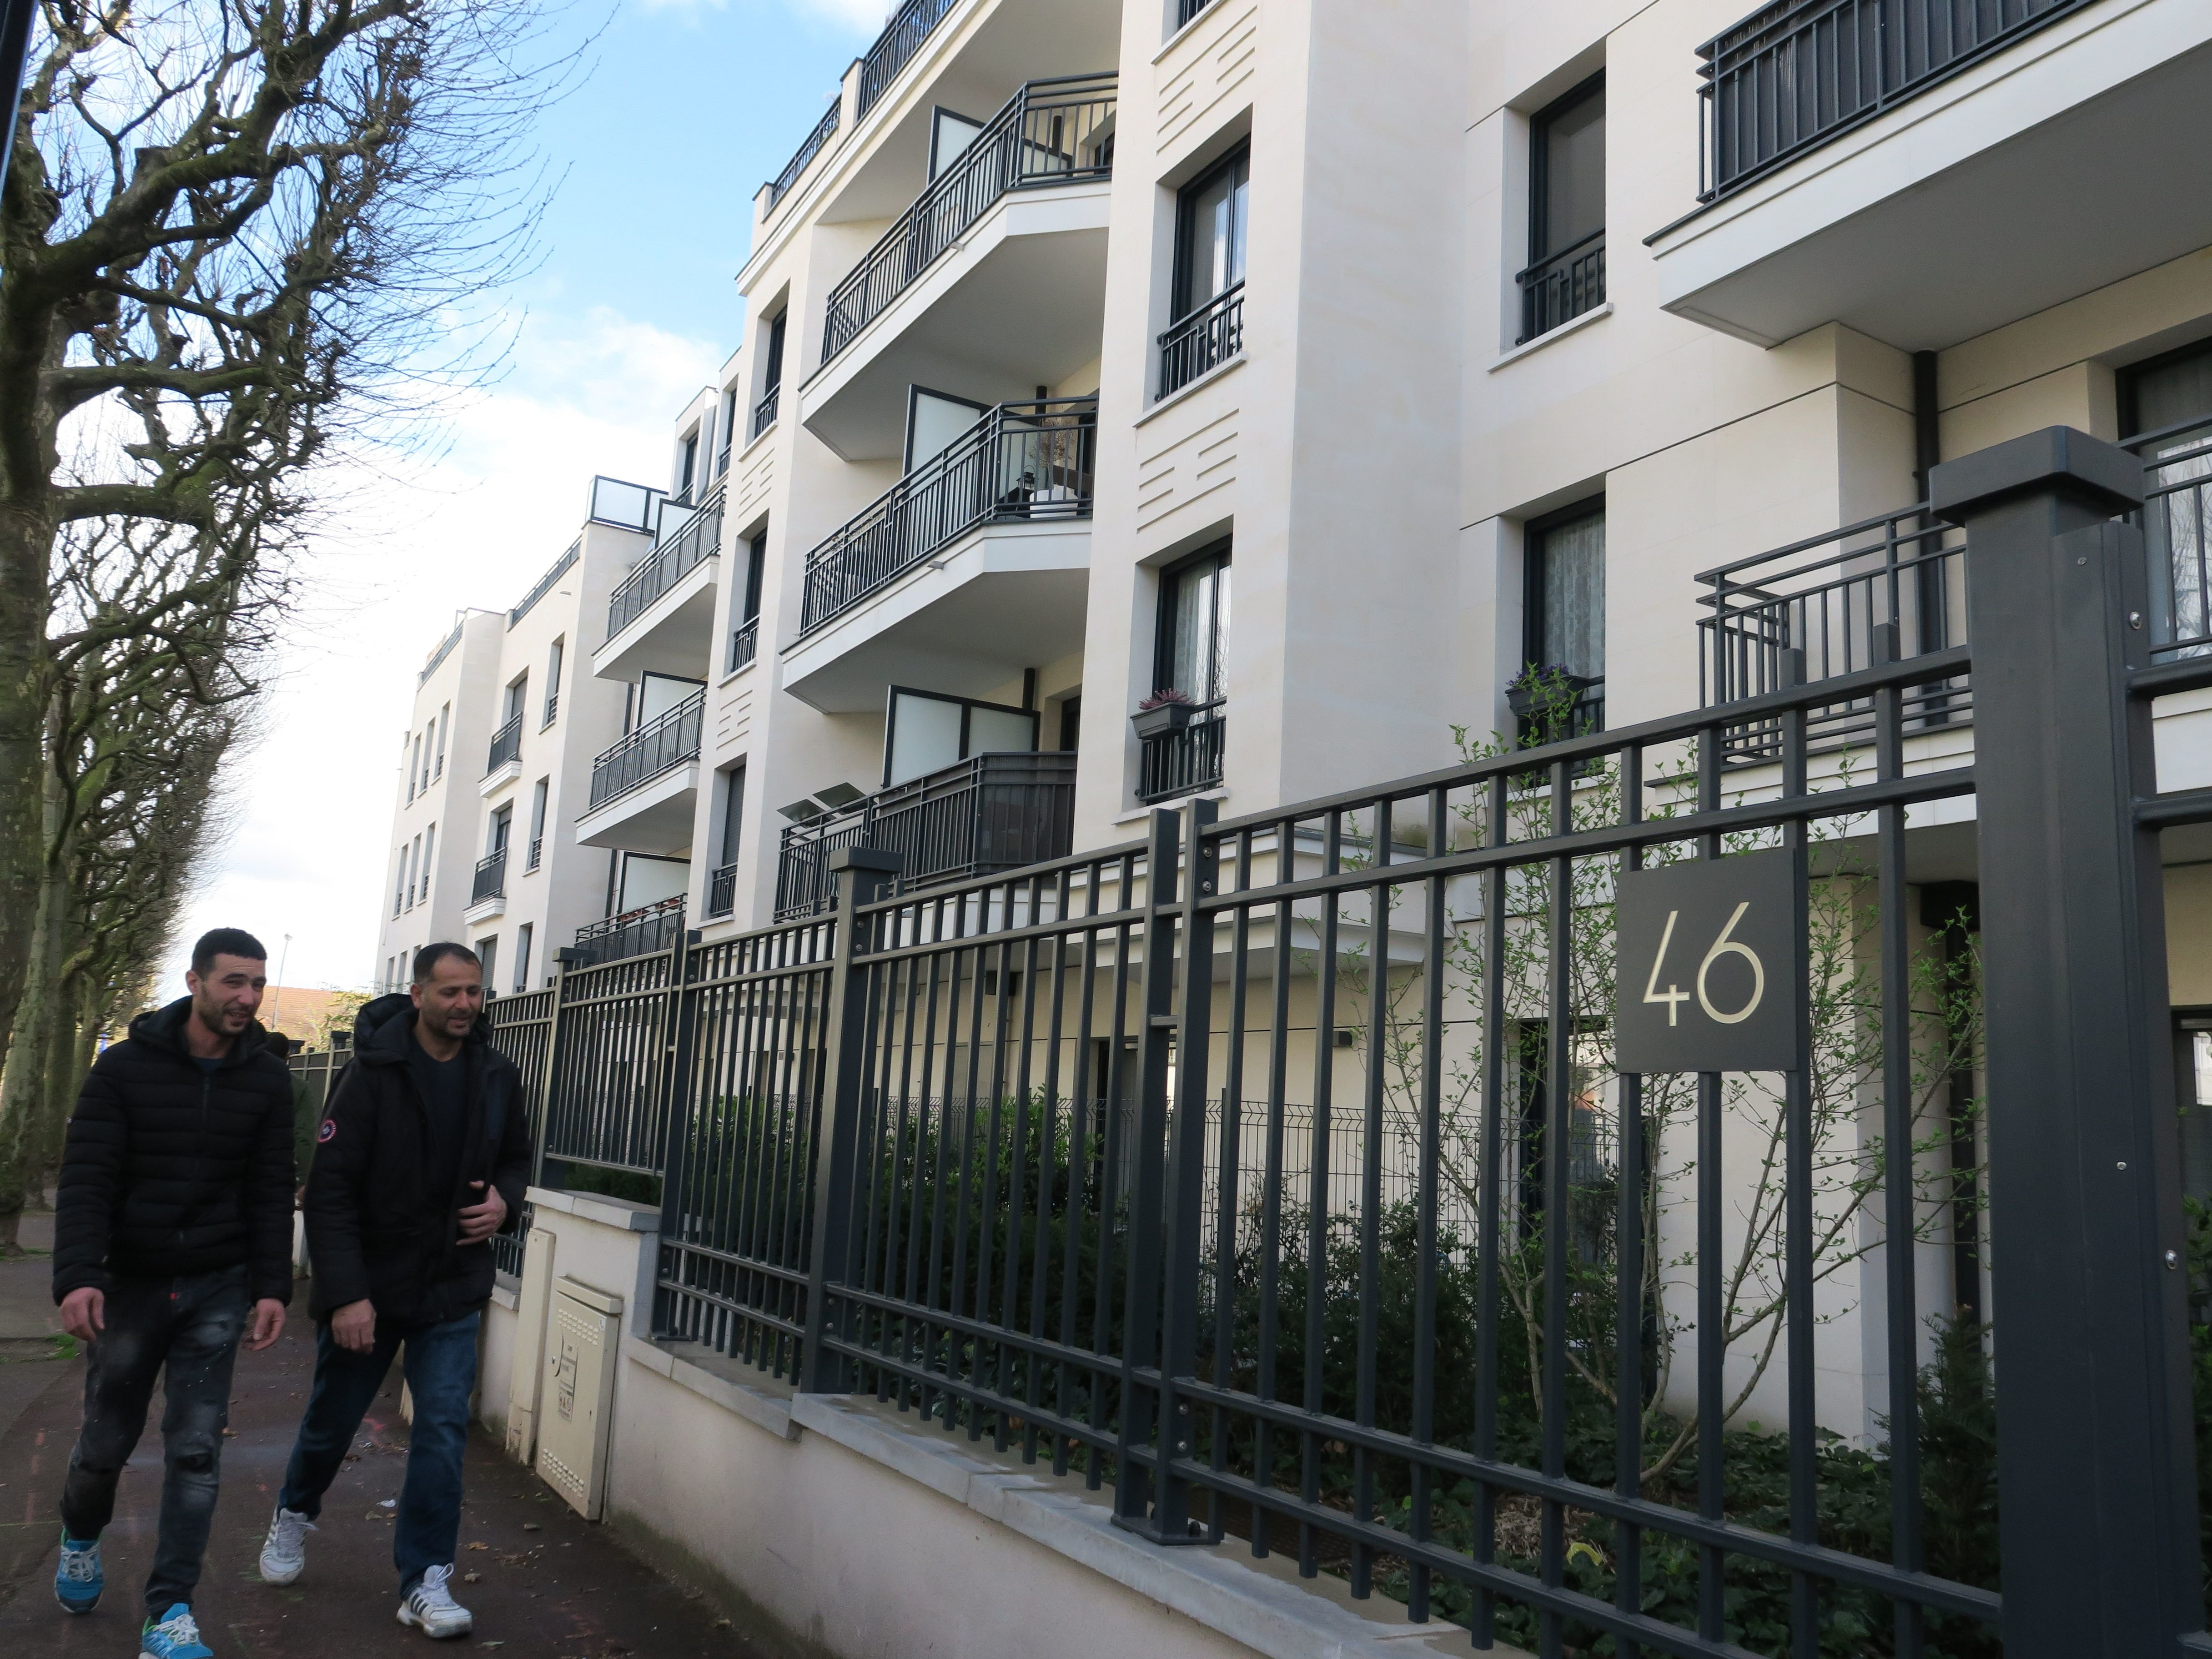 Saint-Maur-des-Fossés. Les logements sociaux construits au 46 avenue de Condé avaient déjà été signés par les élus de la mairie de Saint-Maur. LP/Laure Parny